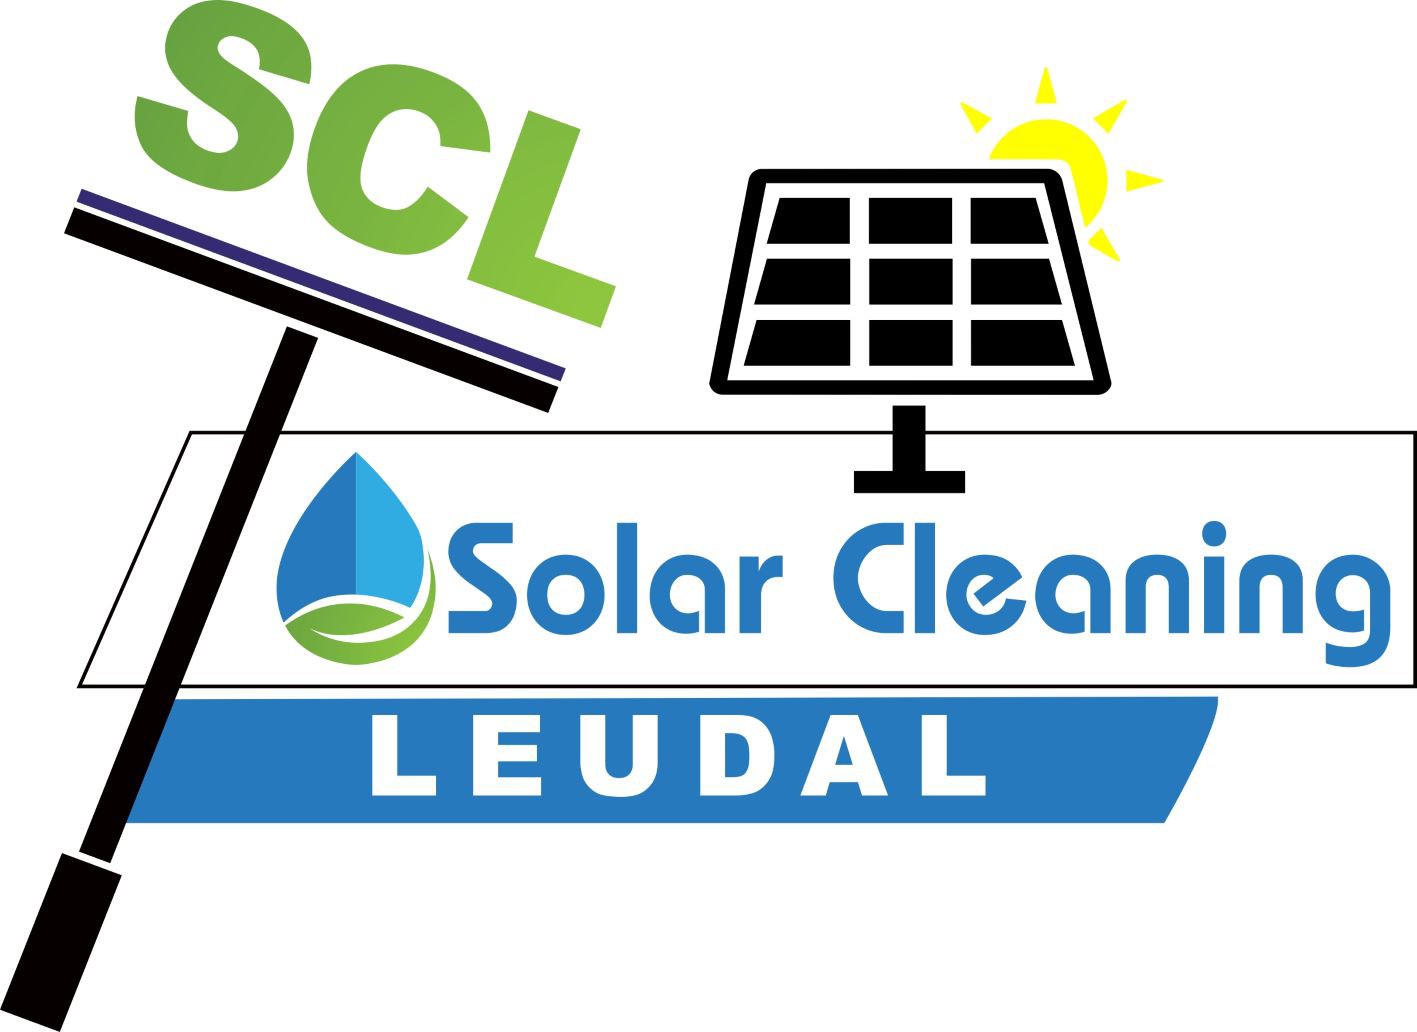 Solar cleaning Leudal